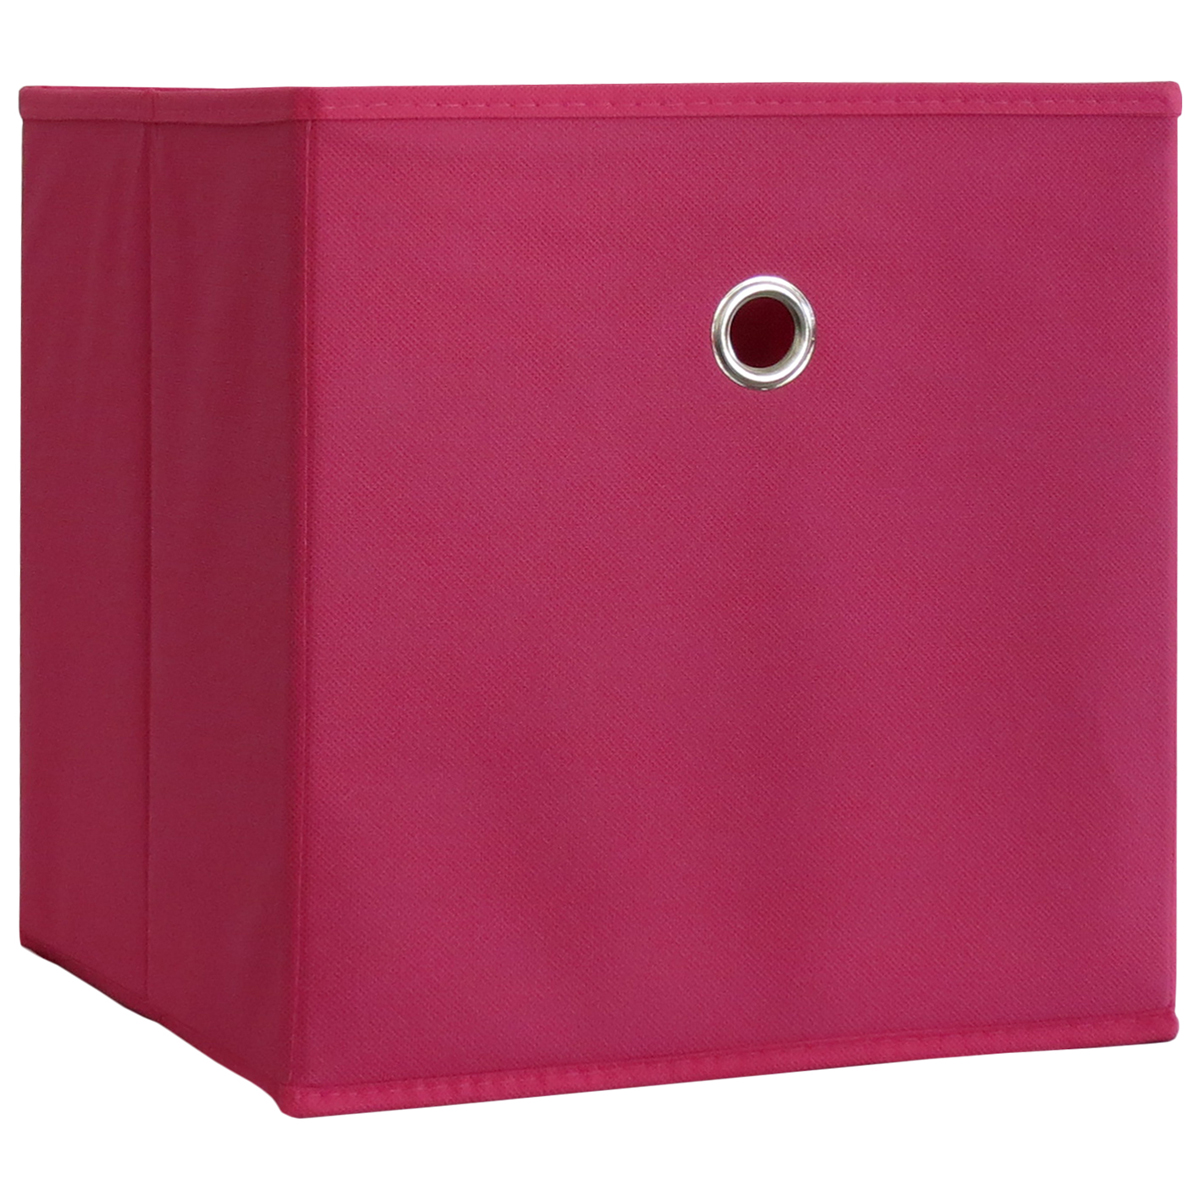 E-shop VCM Skládací box růžový, 2 kusy